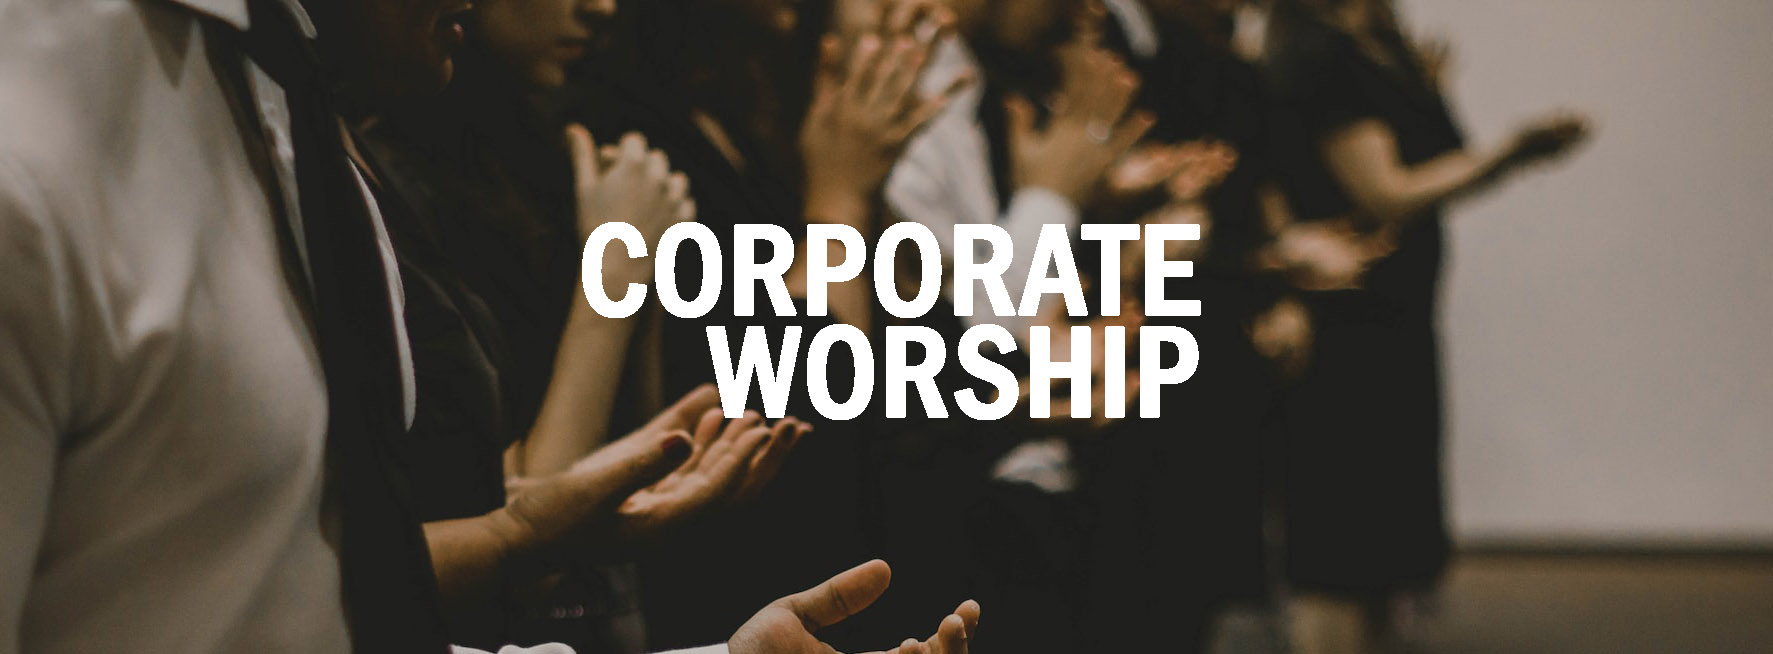 Corporate Worship - 3